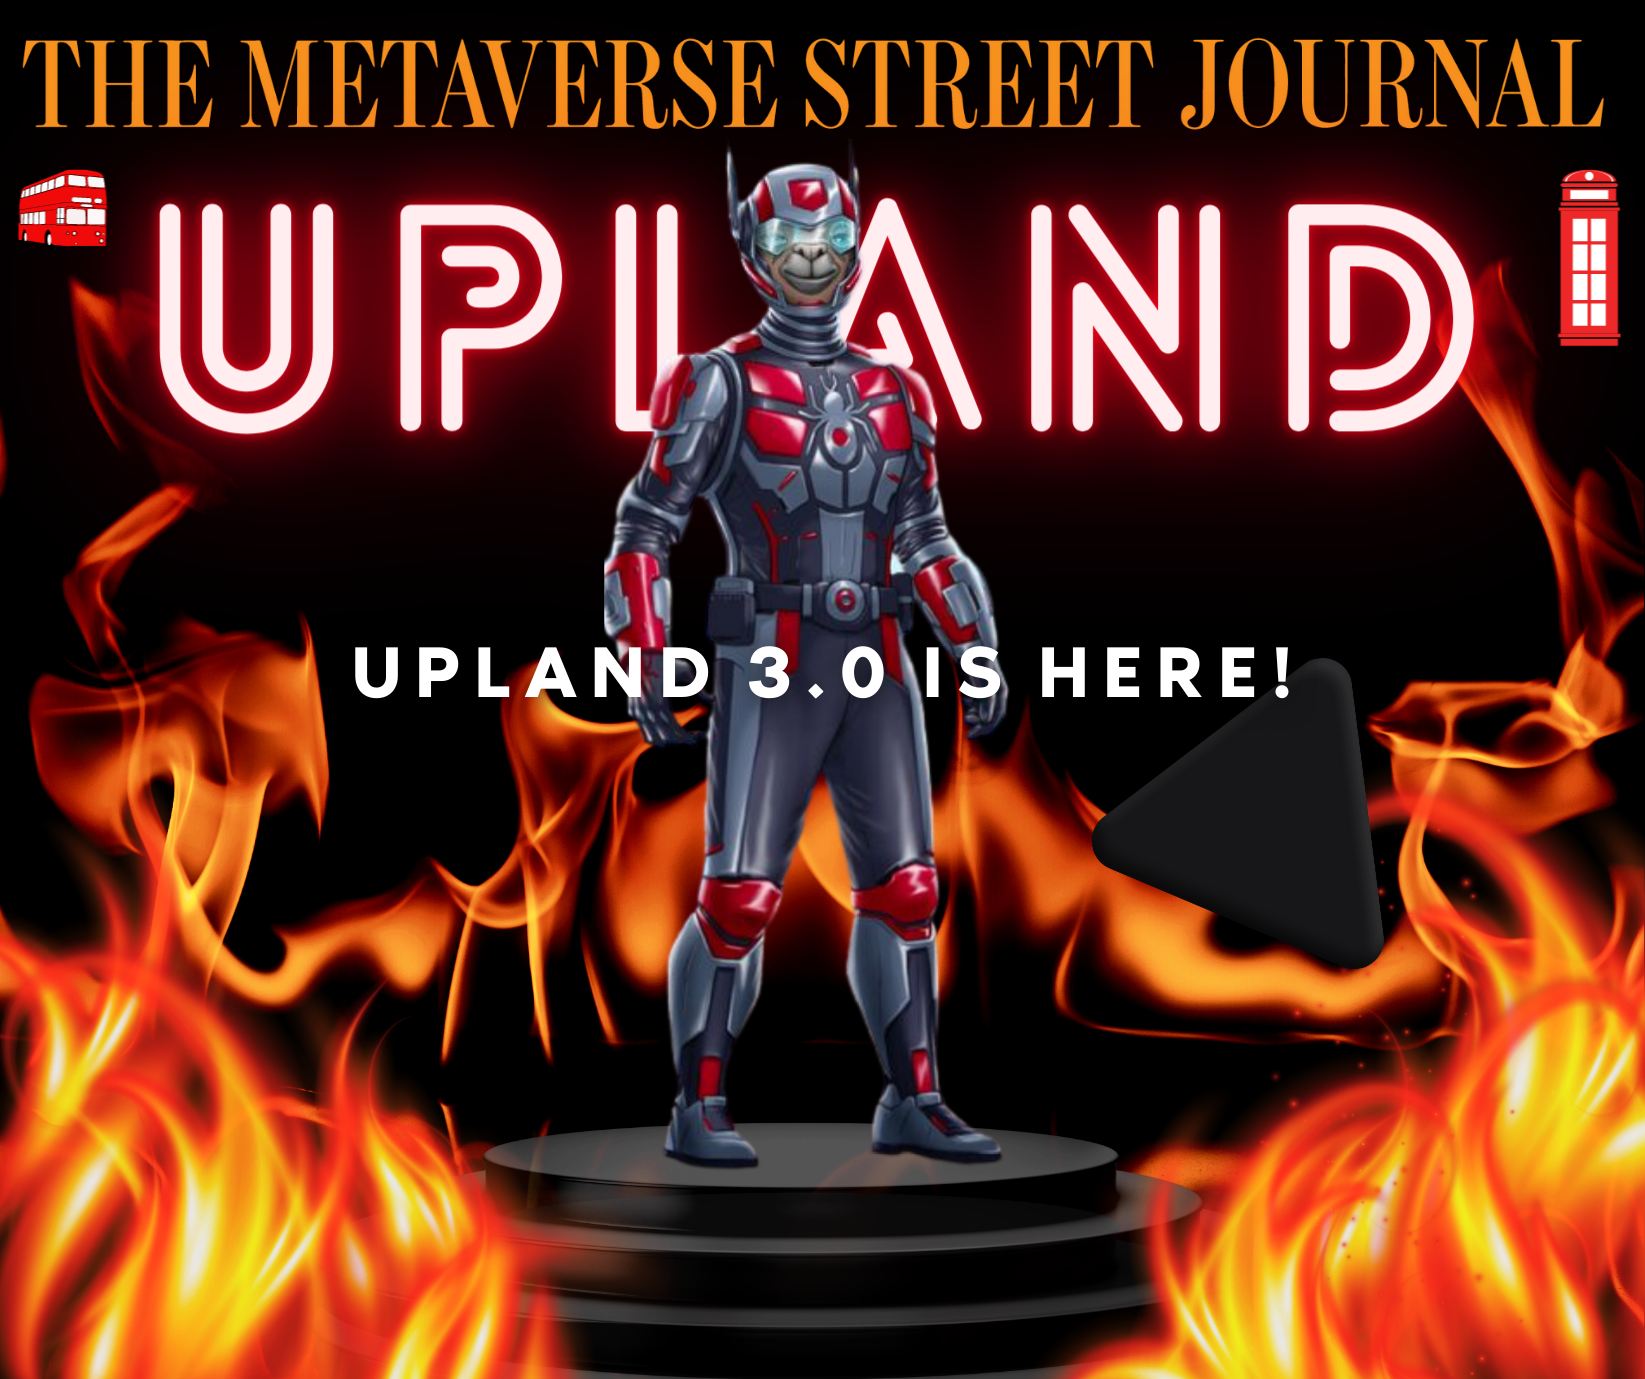 Metaverse News: Upland Metaverse has reinvented itself into Upland 3.0